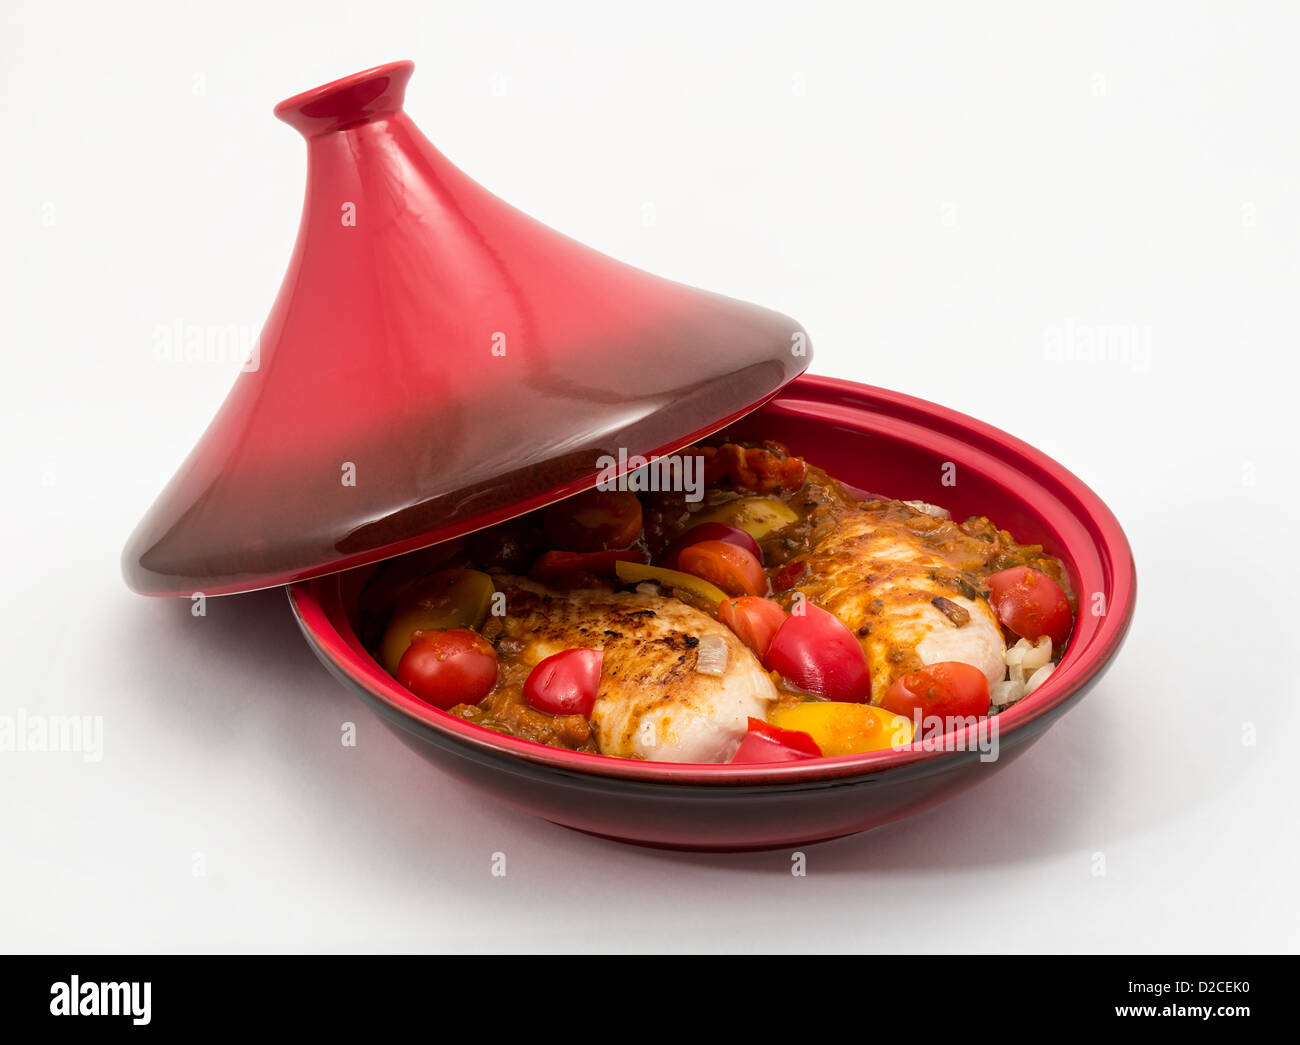 Tagine (Tajine) eine Art von Kochgeschirr aus Marokko, hier gezeigt mit einem vorbereiteten Huhn kochbereit. Stockfoto